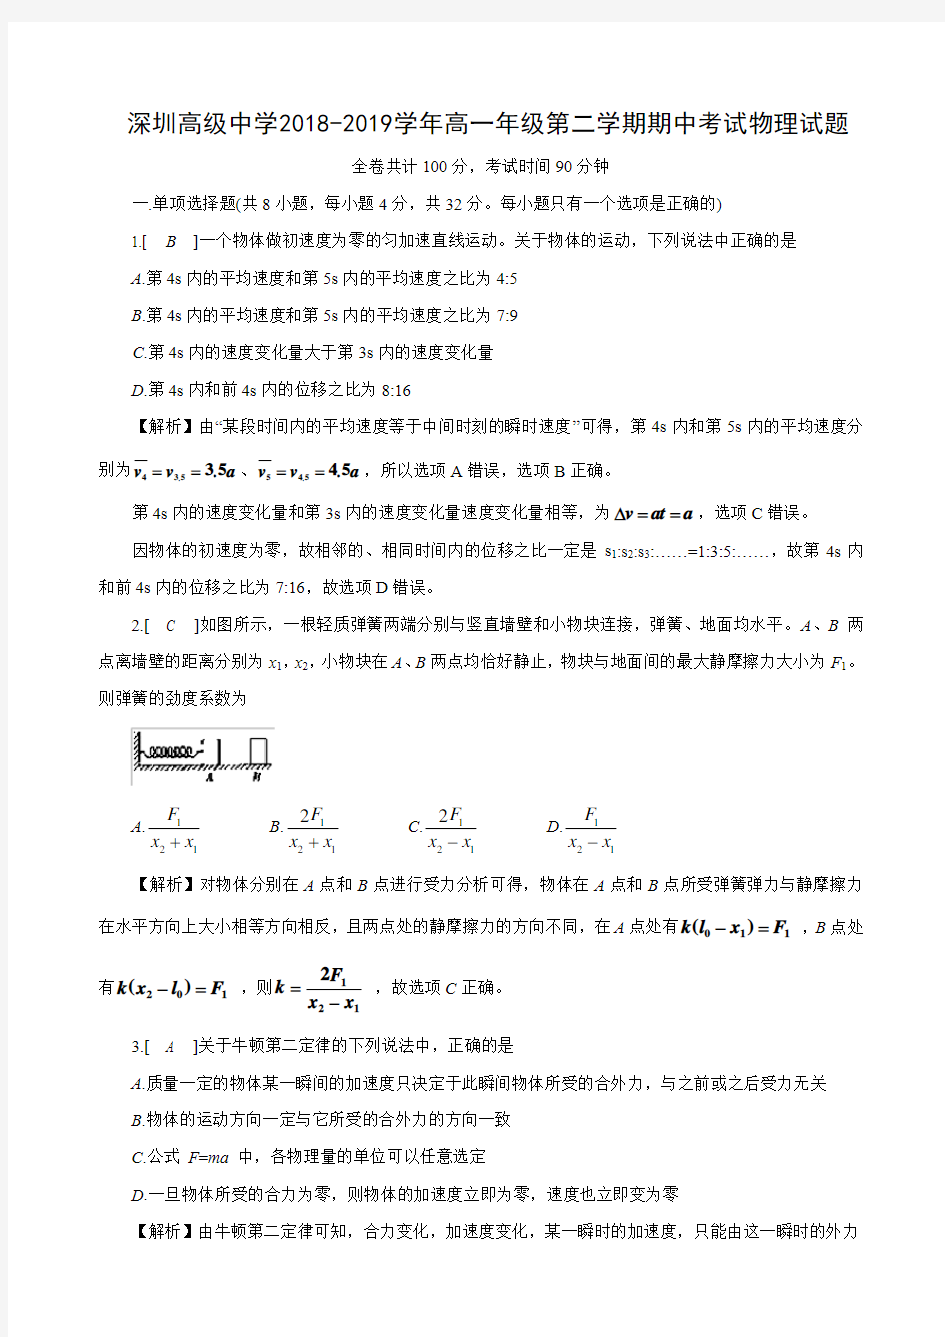 深圳高级中学2018-2019学年高一年级第二学期期中考试物理试题及答案详解